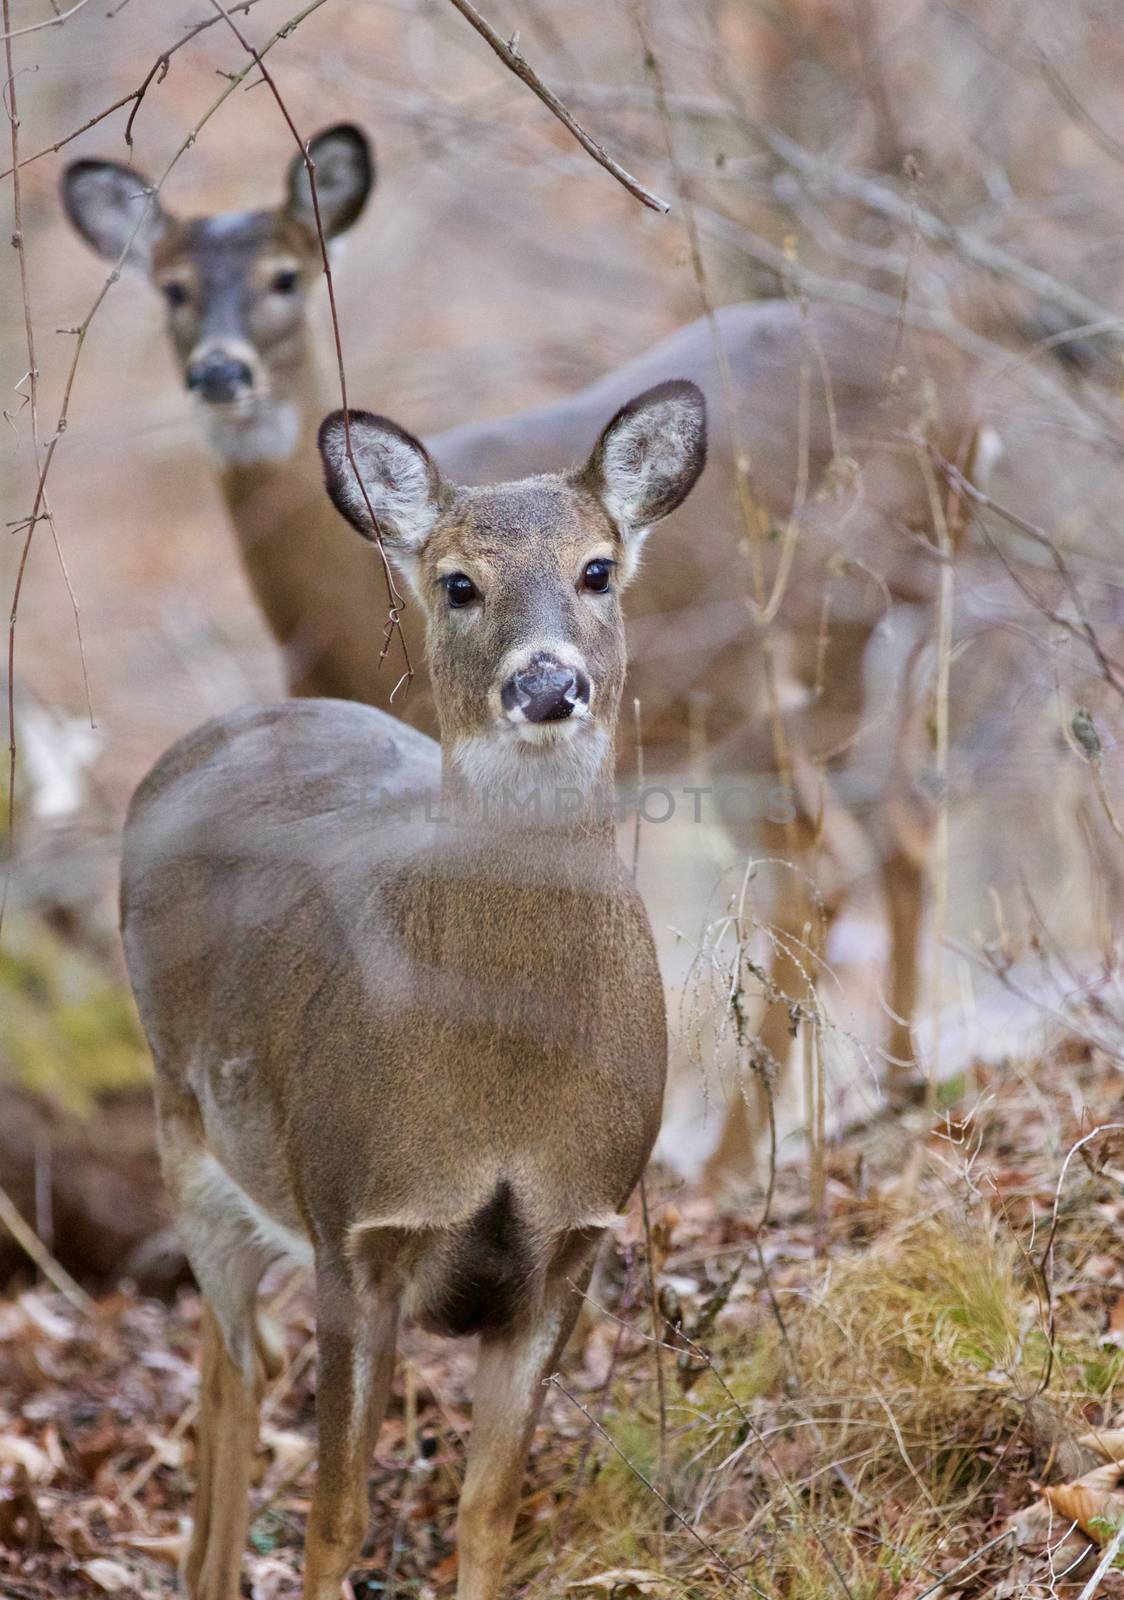 Very cute wild deer with the big black eyes